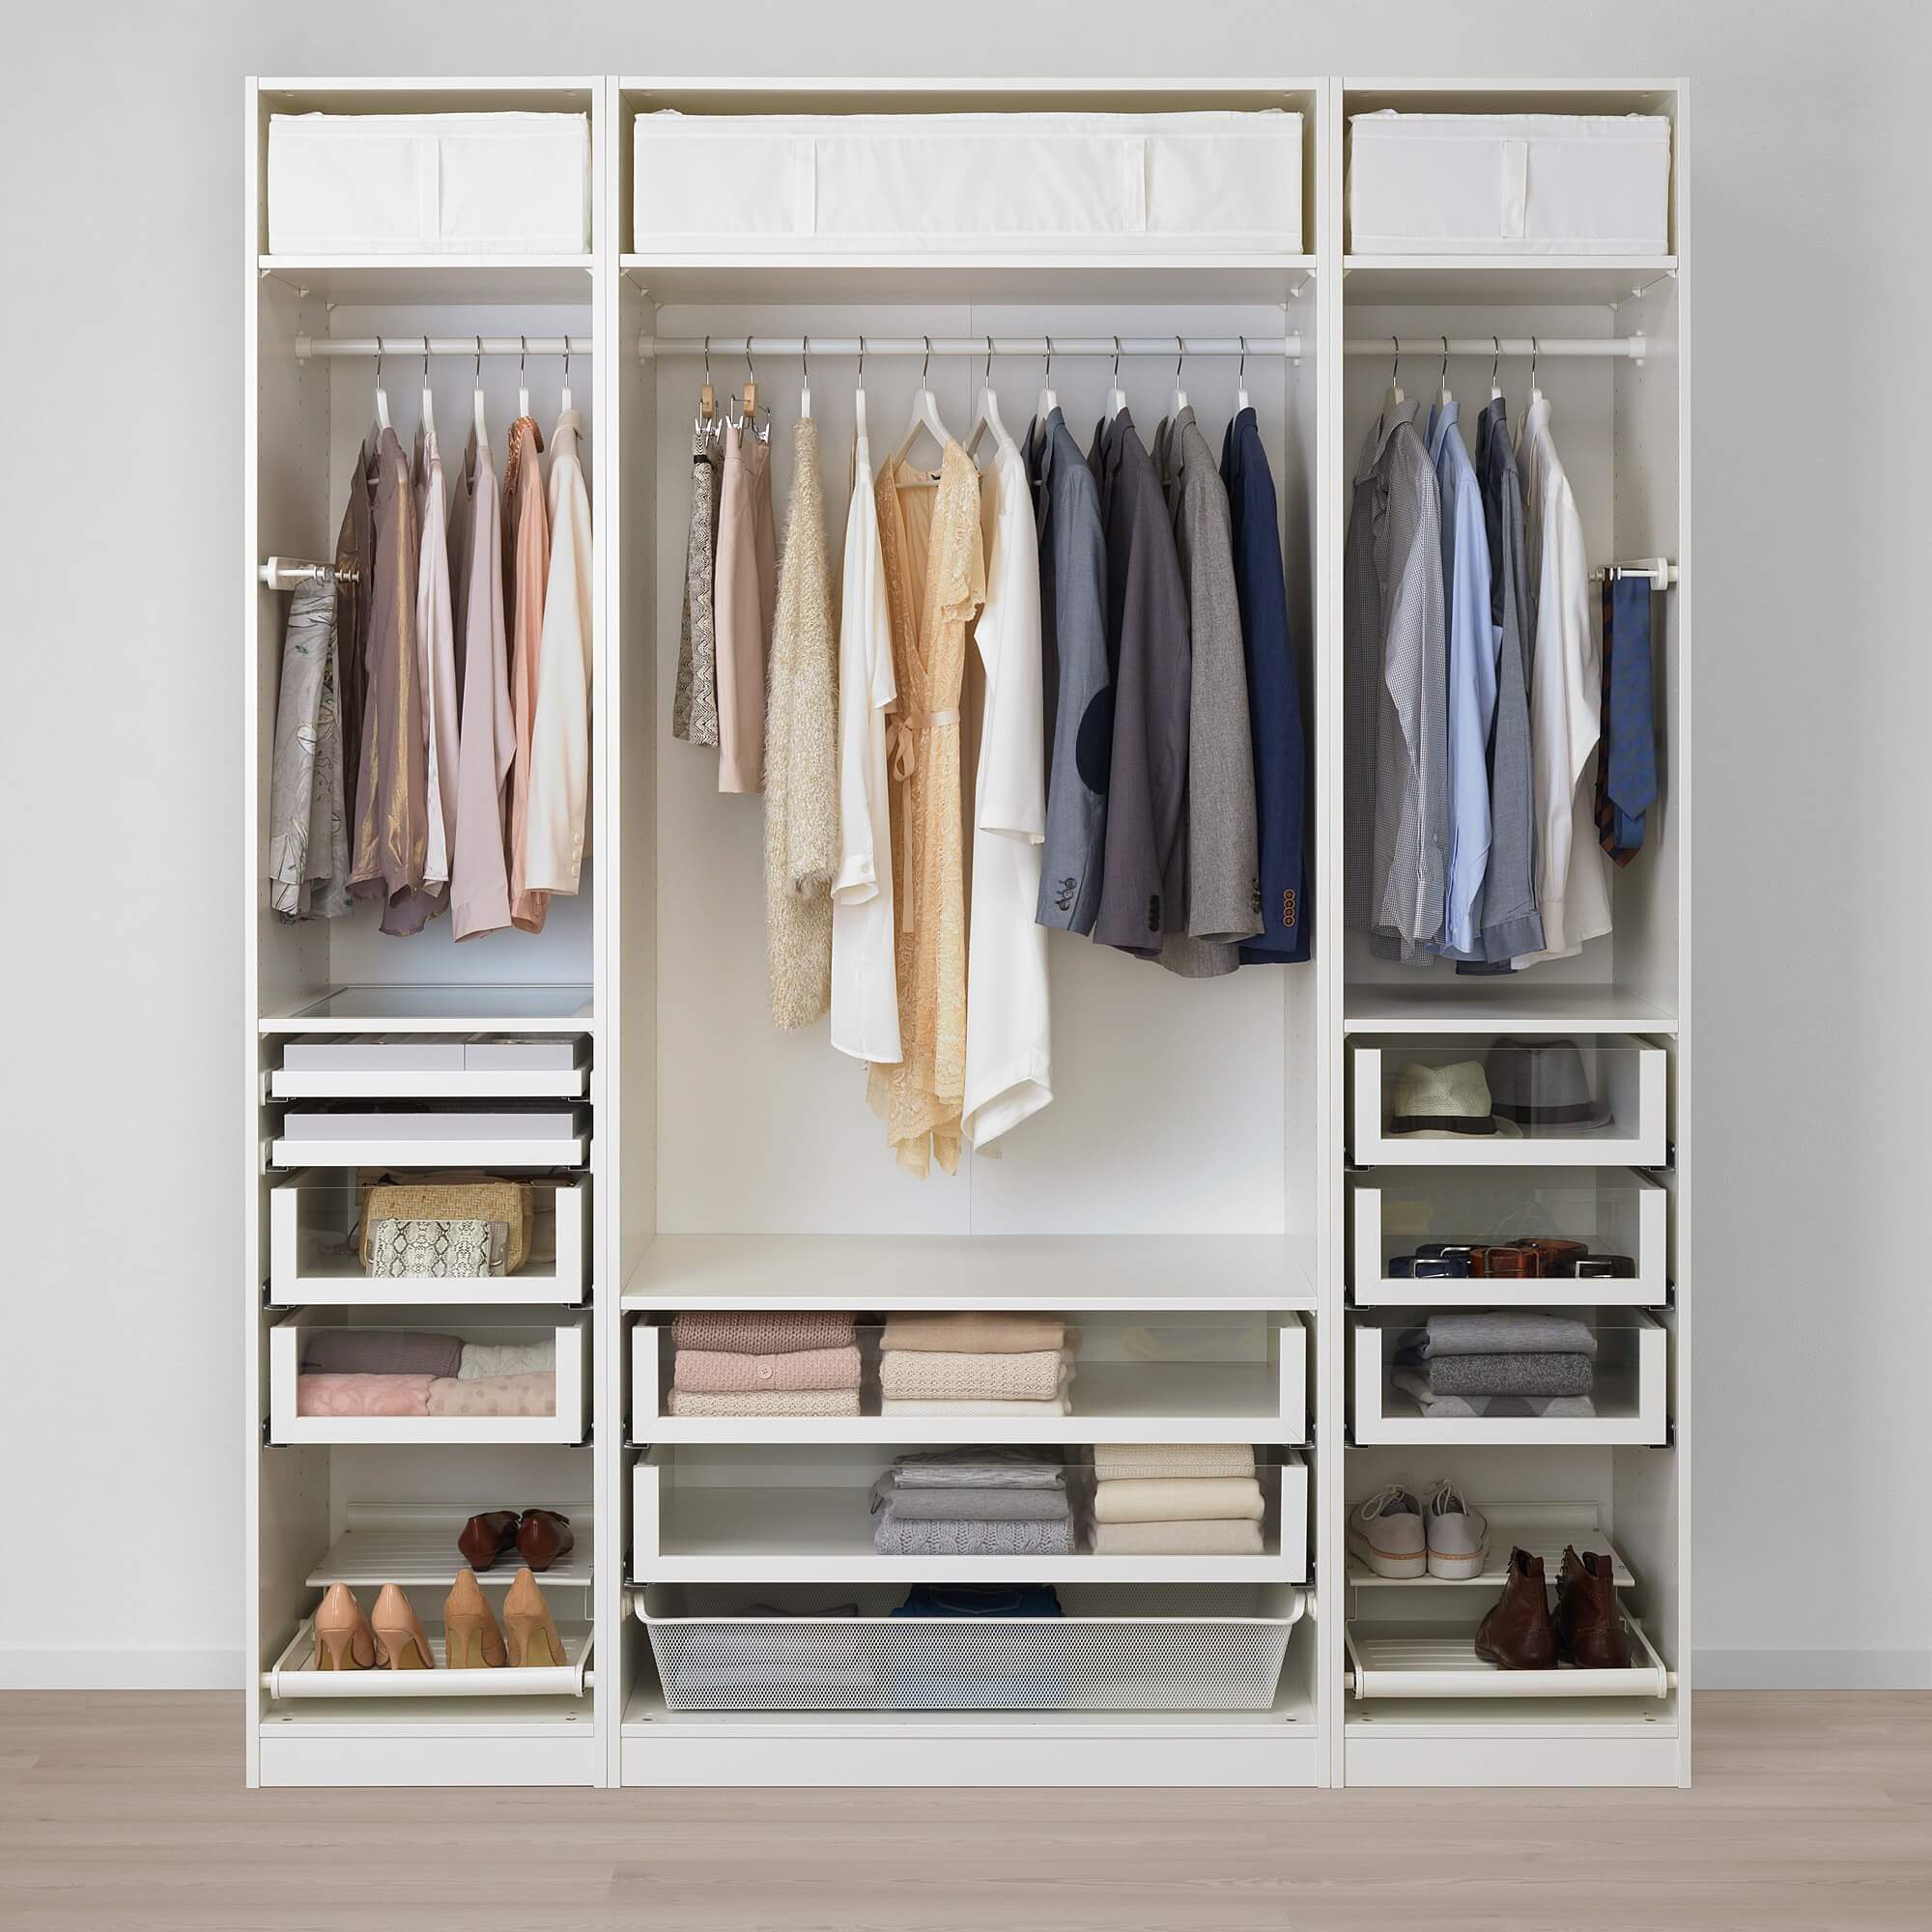 Tủ quần áo mở không cửa đơn giản, hiện đại phù hợp phong cách tối giản